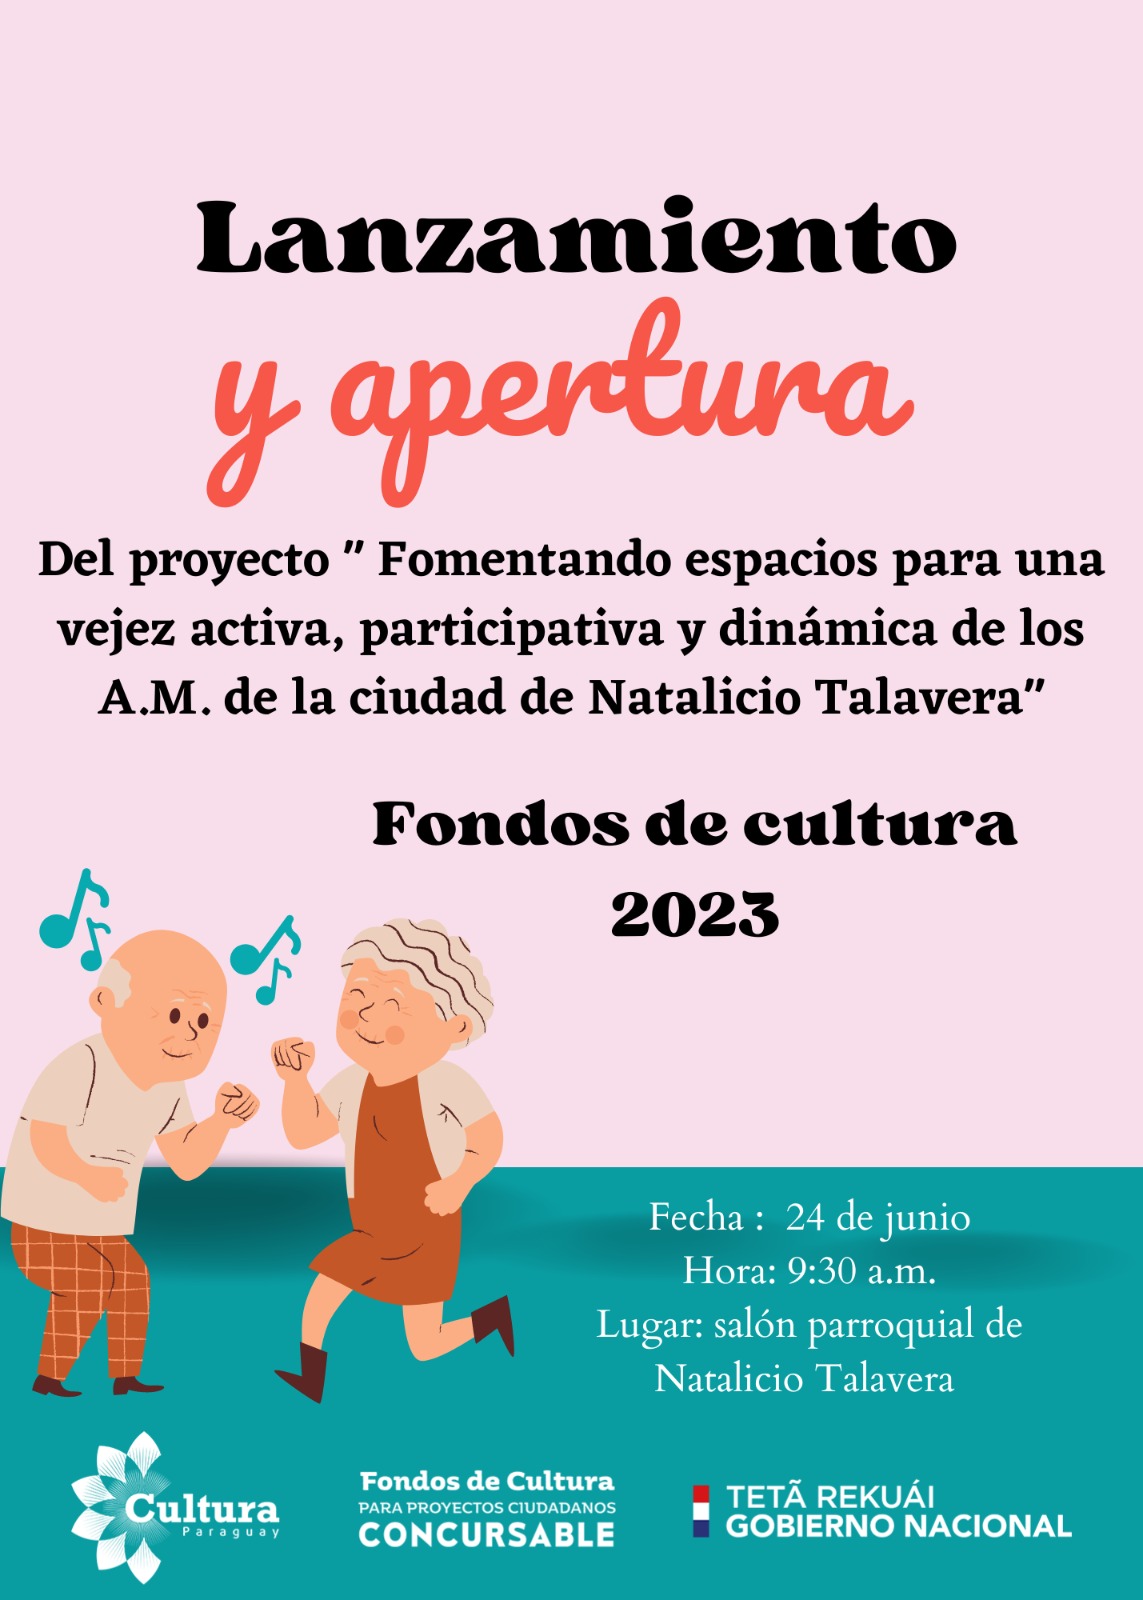 Fondos de Cultura 2023: adultos mayores de Natalicio Talavera disfrutarán de espacio para fomentar actividades artísticas imagen